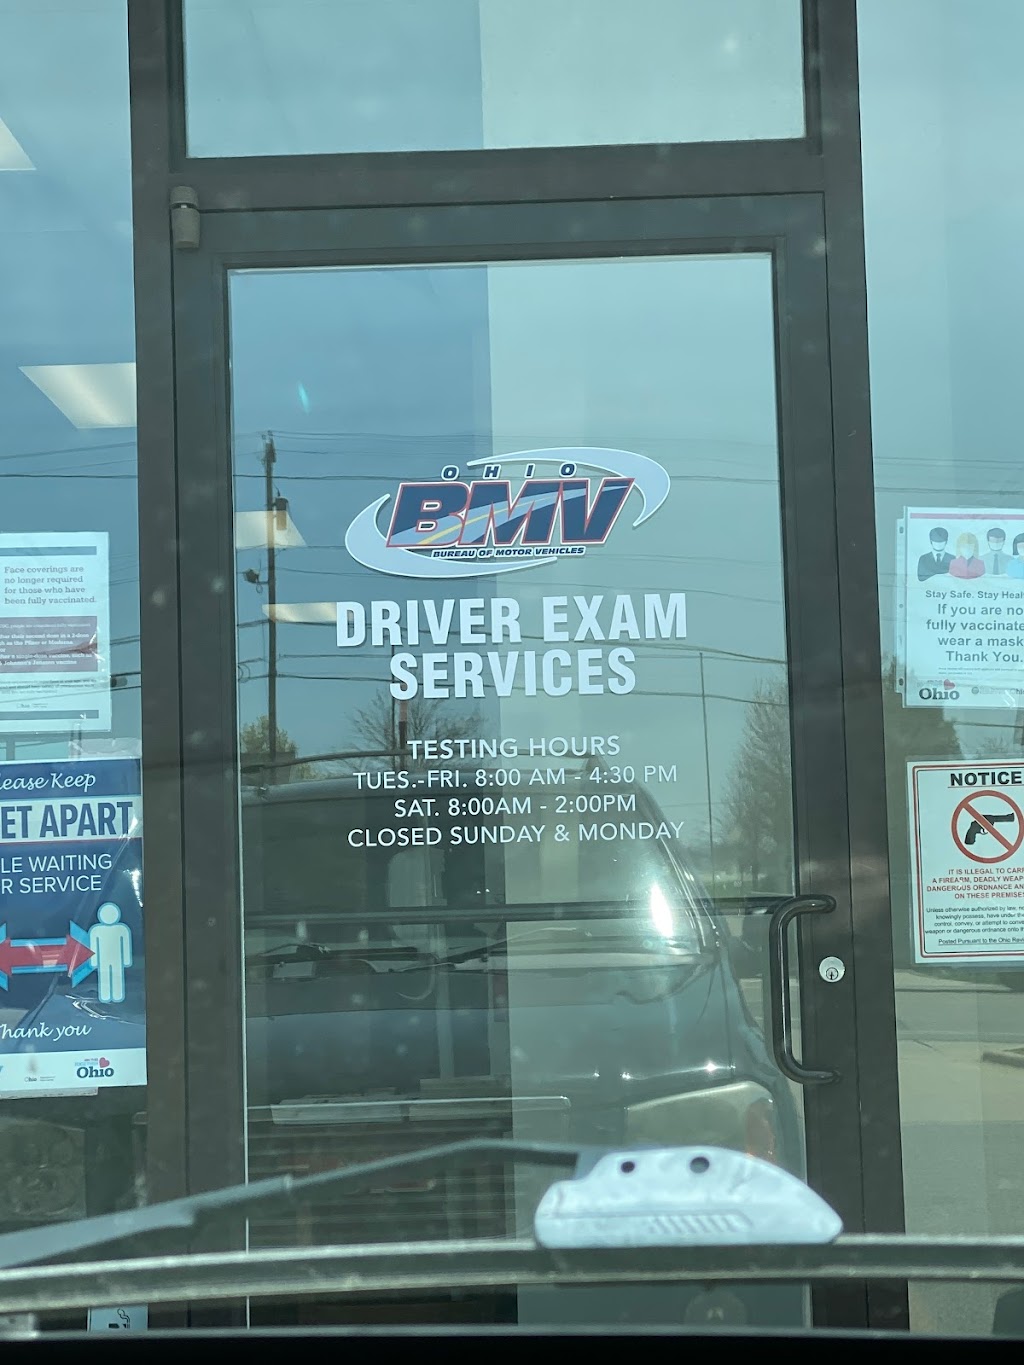 Bureau of Motor Vehicles | 1070 Commerce Pkwy, Ashland, OH 44805 | Phone: (419) 281-2125